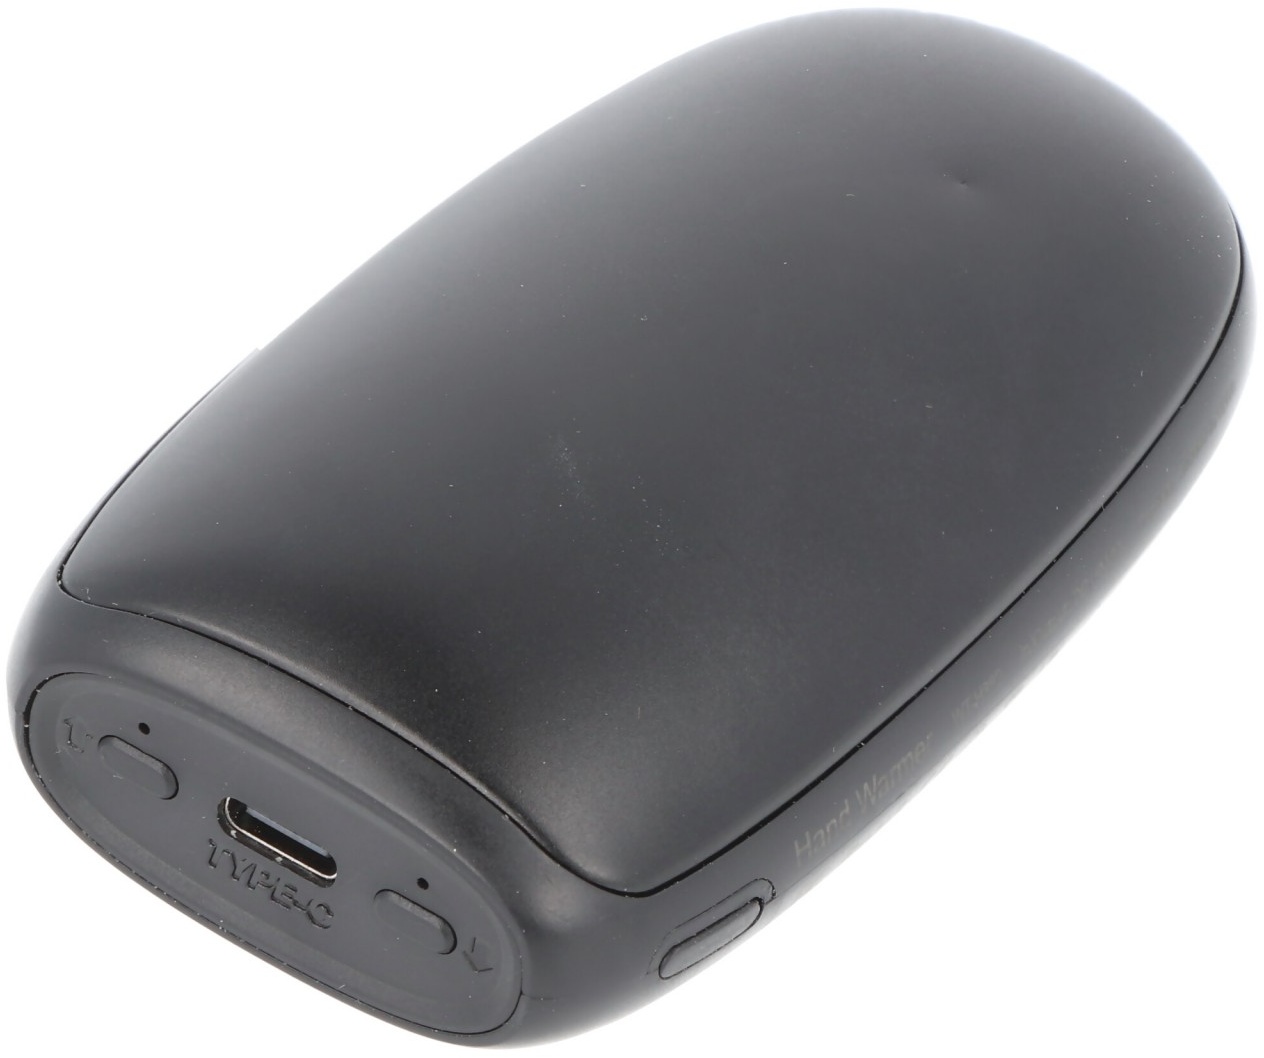 Handwärmer mit Powerbank Funktion, USB-C Ladekabel, beide Seiten einstellbar